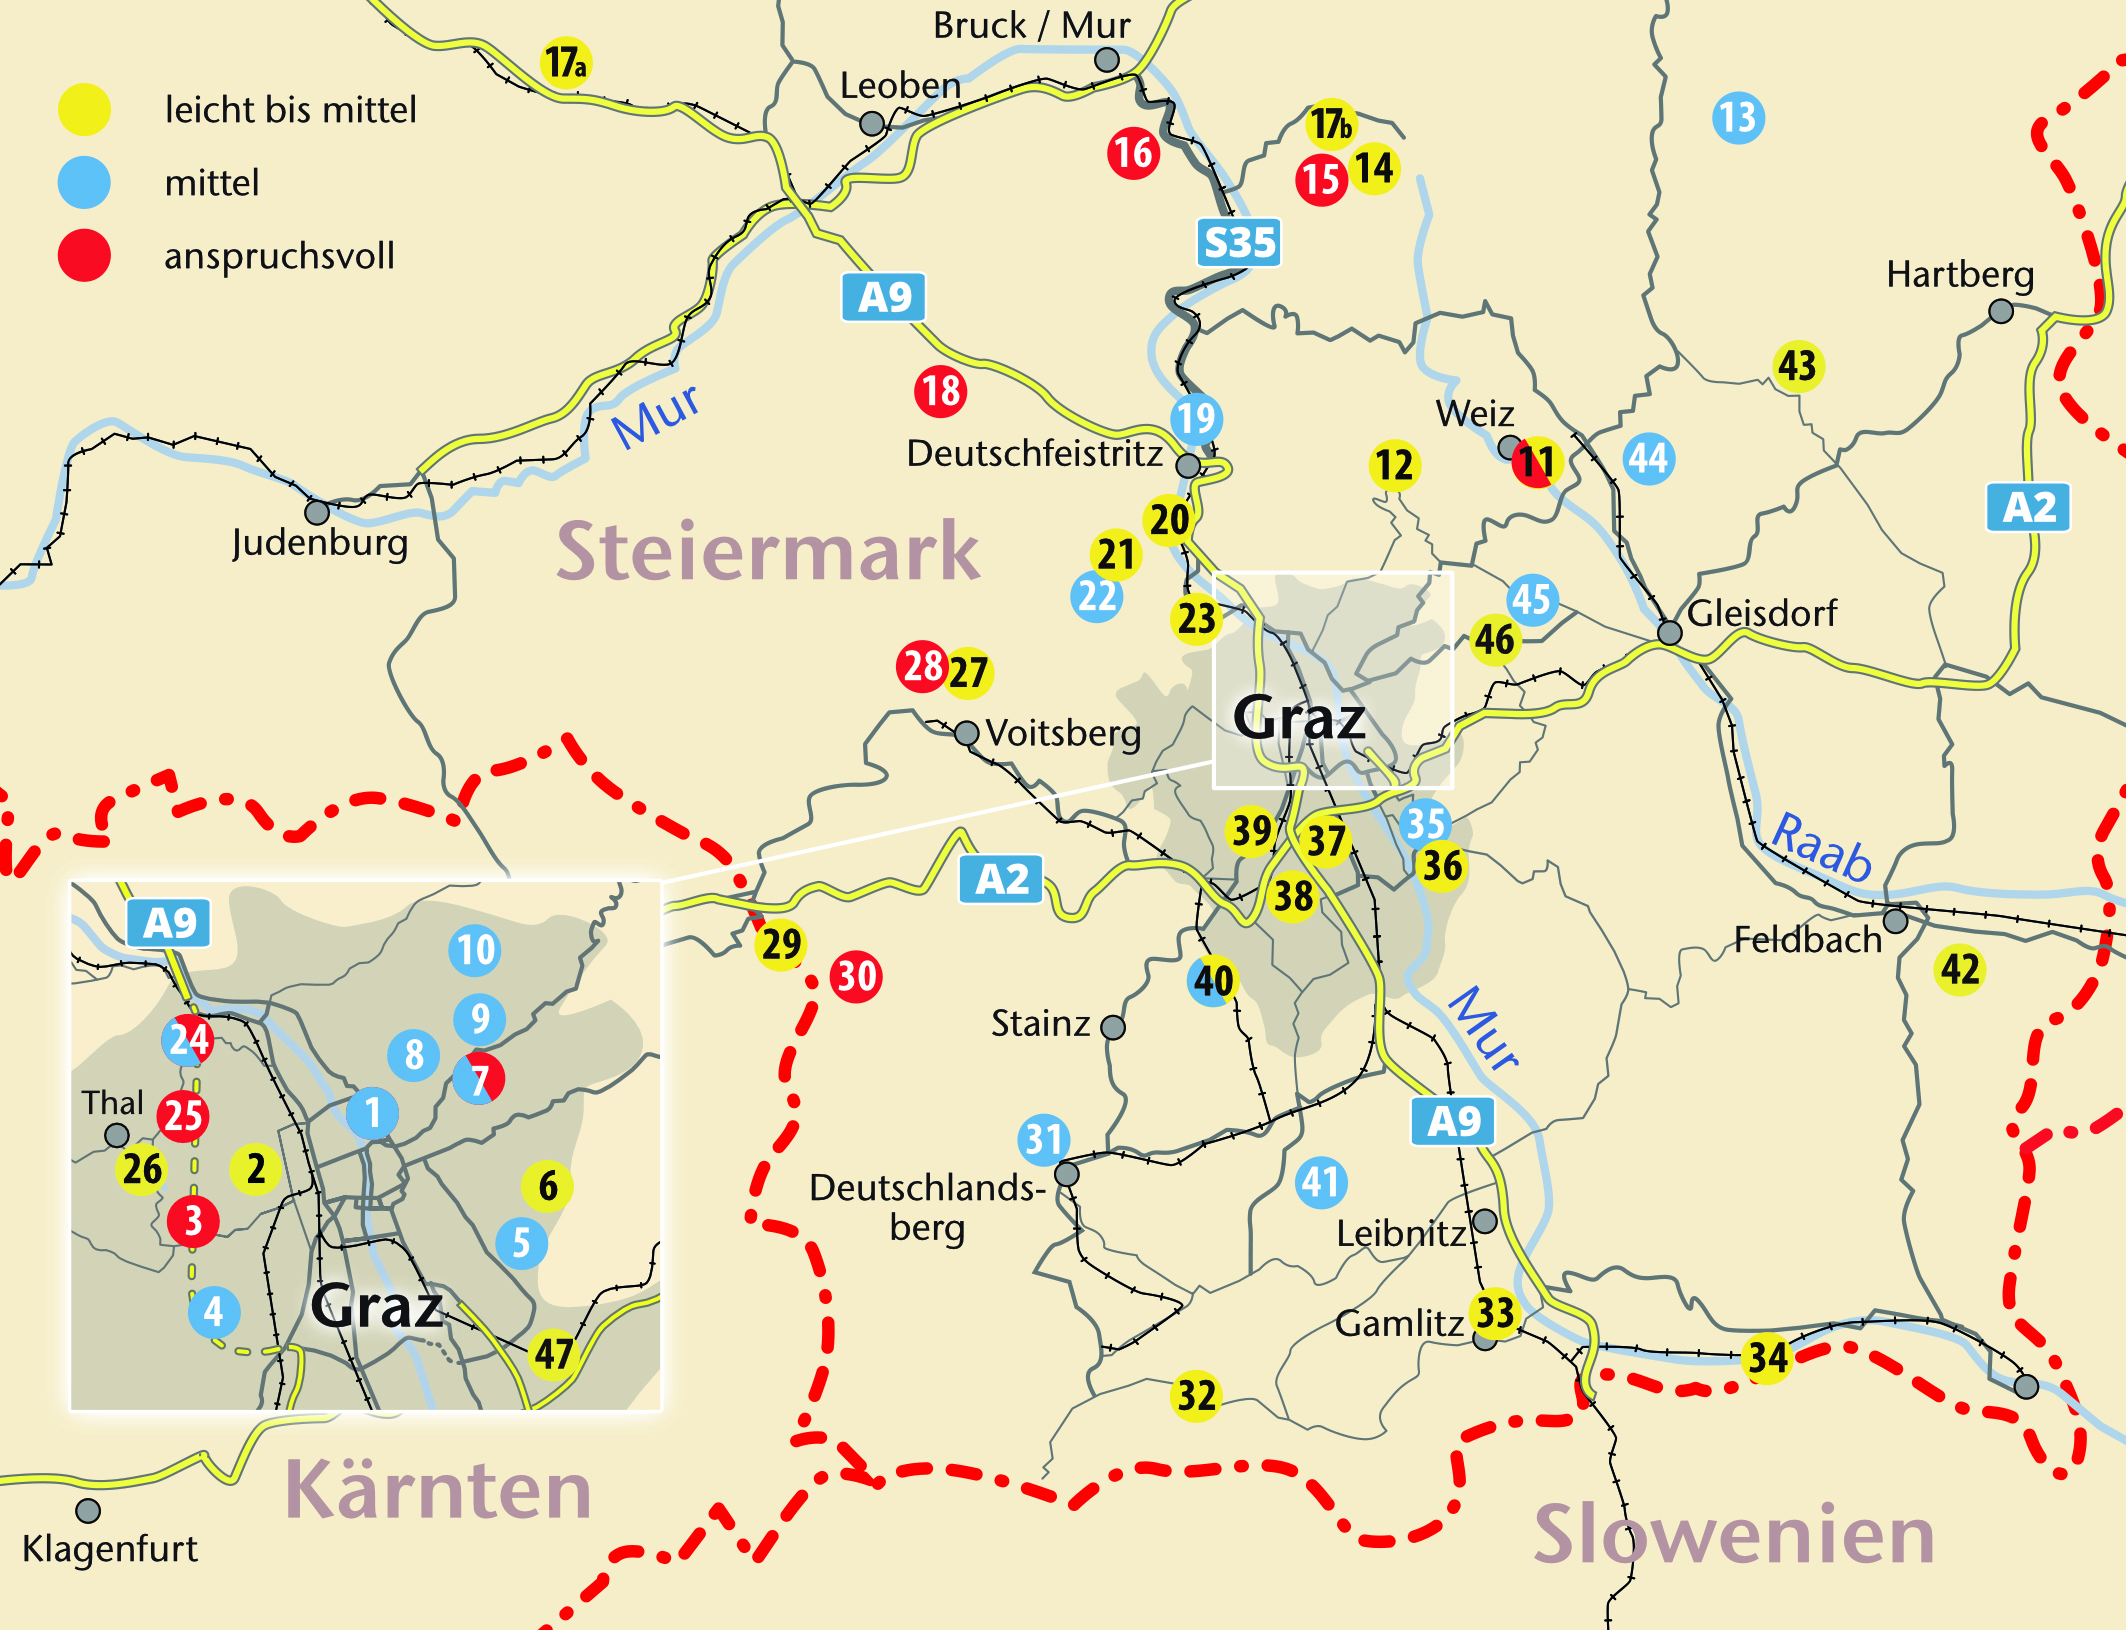 Karte von Graz und Umgebung mit Eintragung der Tournummern in den drei Schwierigkeitsgraden: leicht, mittel, schwer.